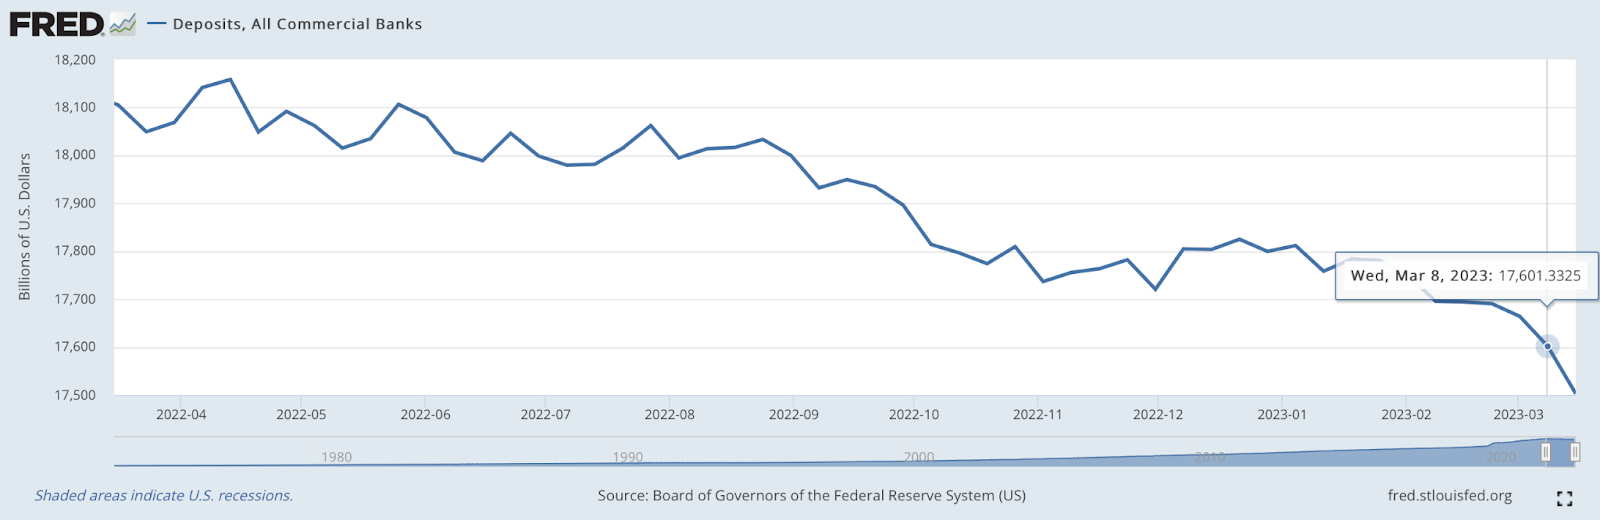 為什麼美聯儲資產負債表的激增不代表QE的開始